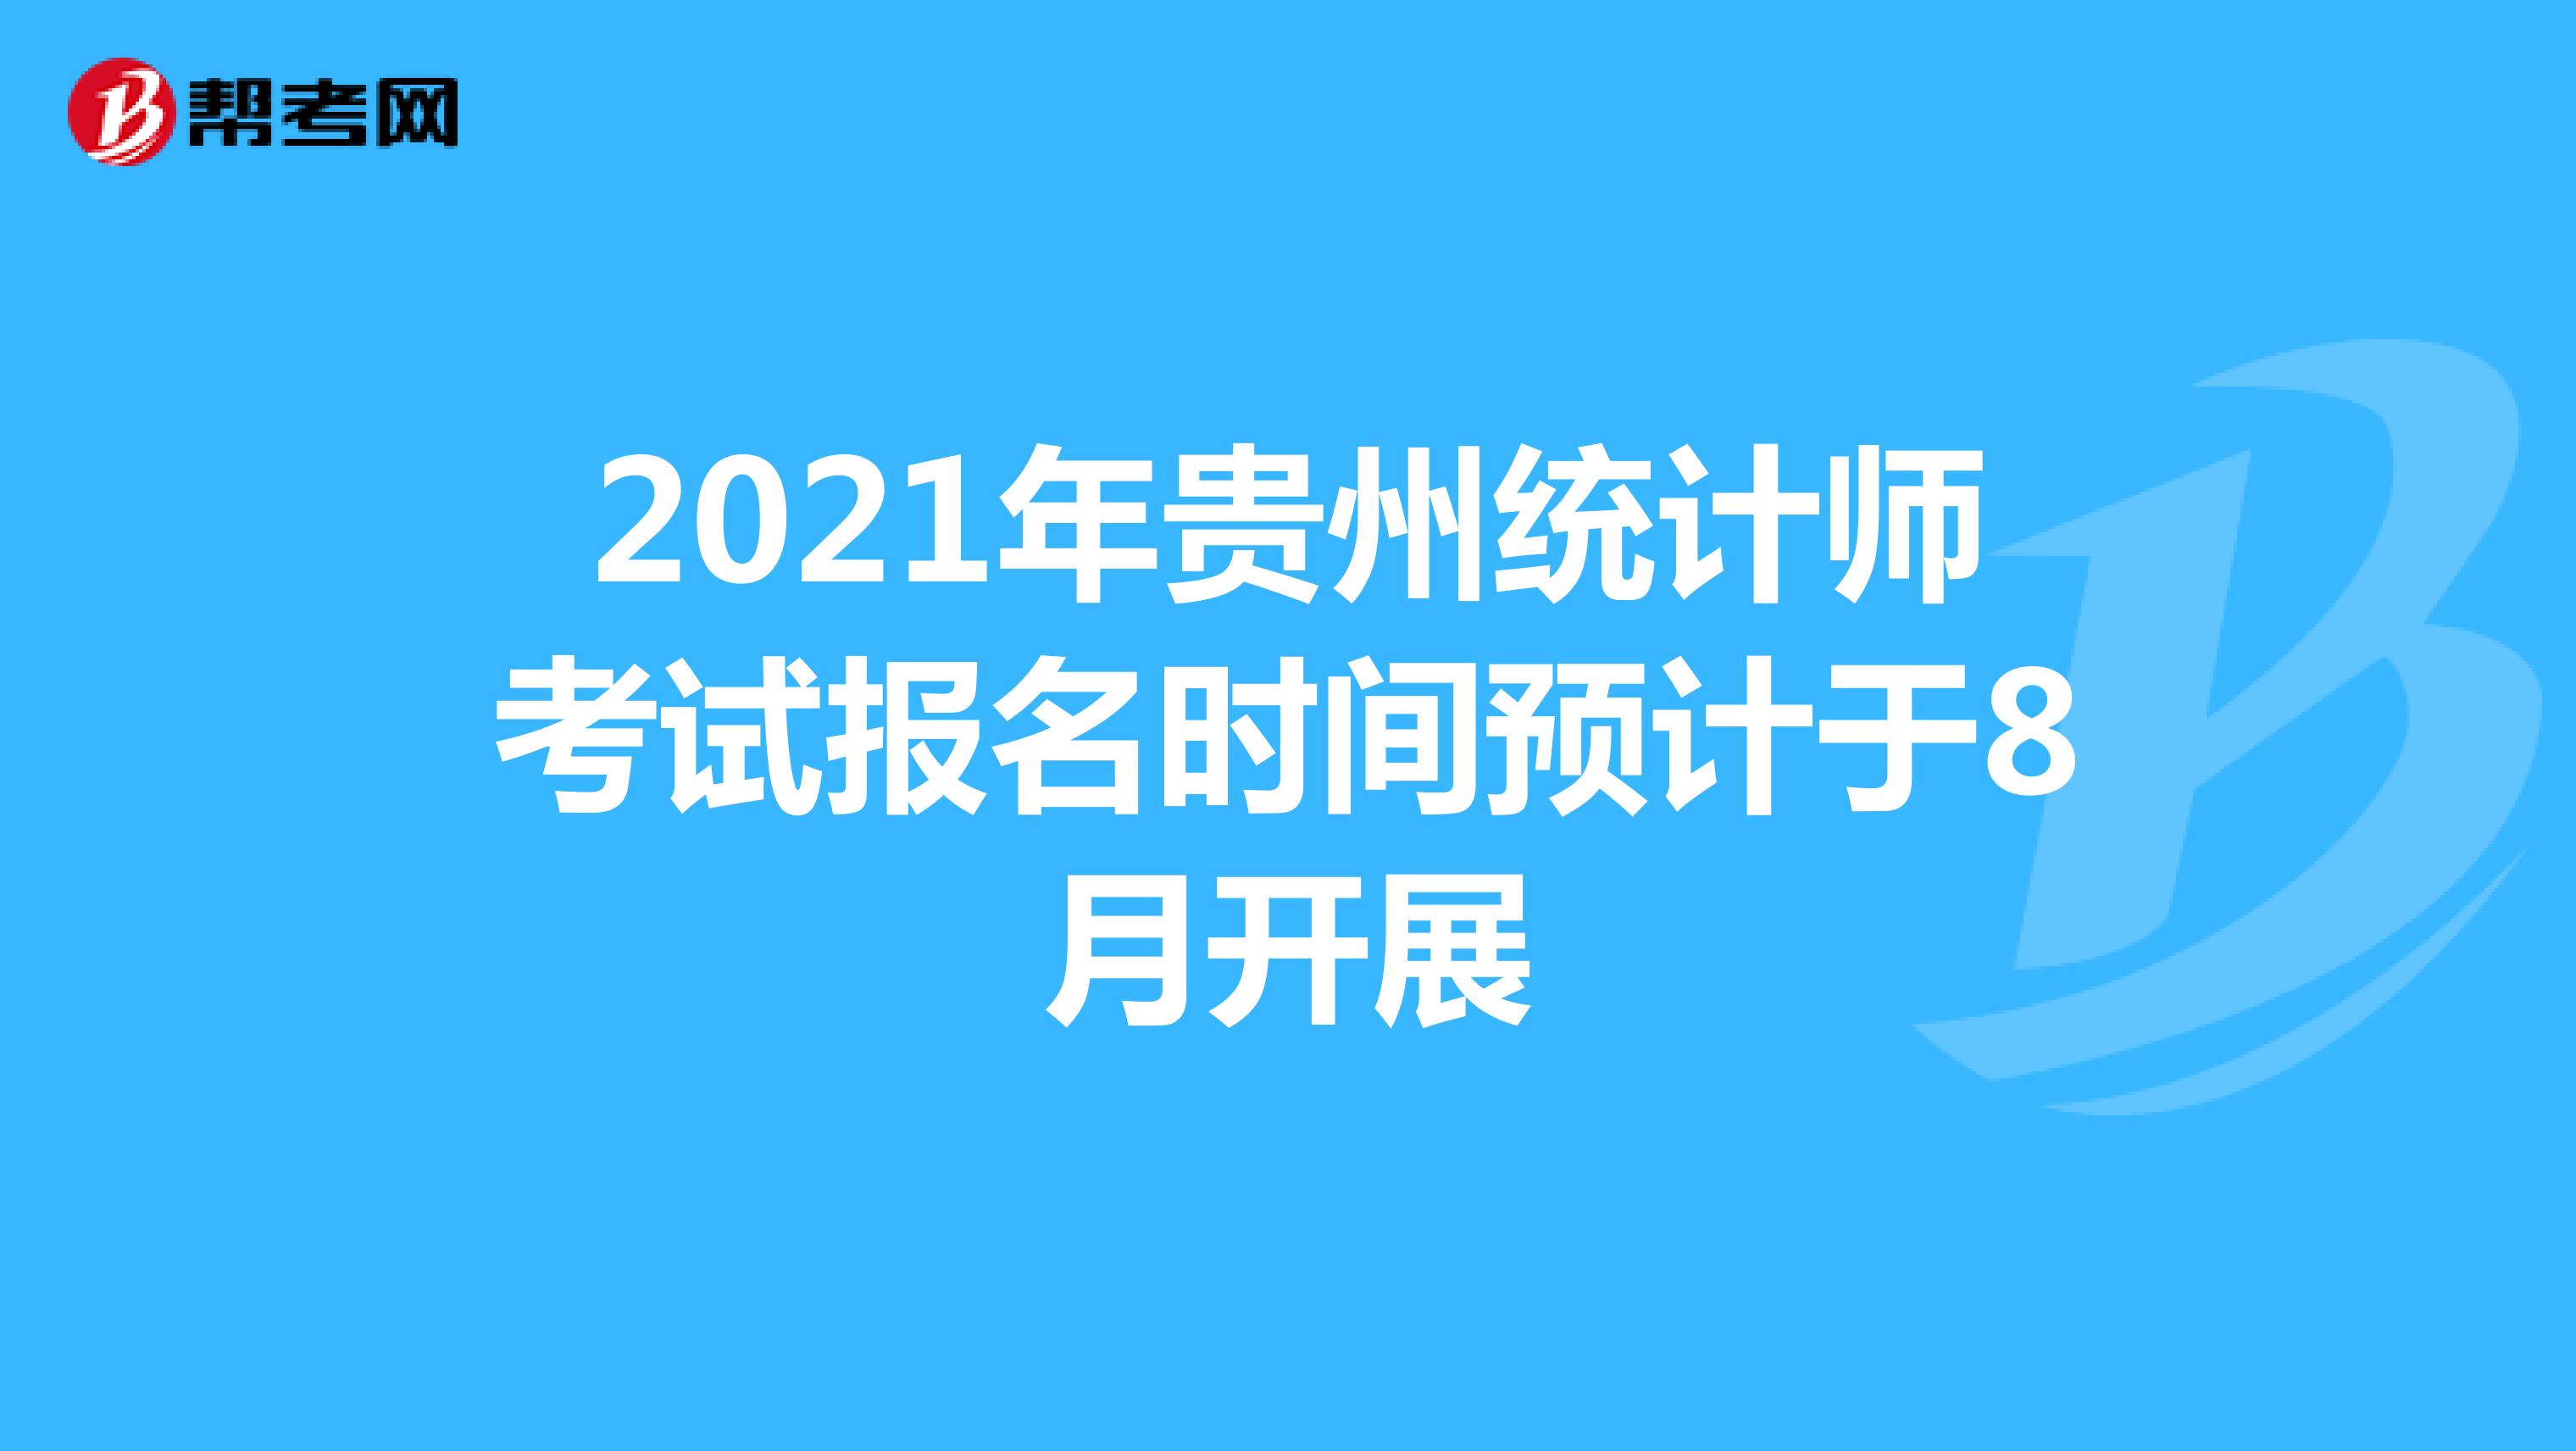 2021年贵州统计师考试报名时间预计于8月开展